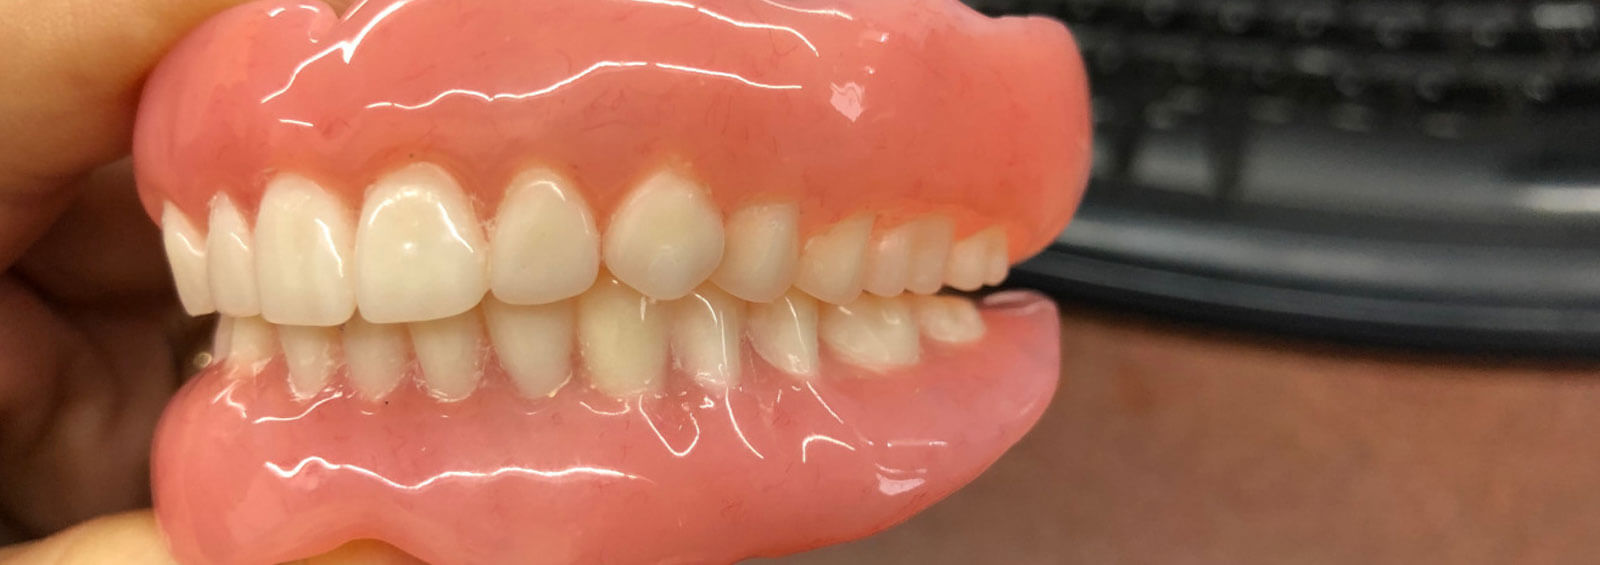 Complete Dentures with Dan's Denture Clinic